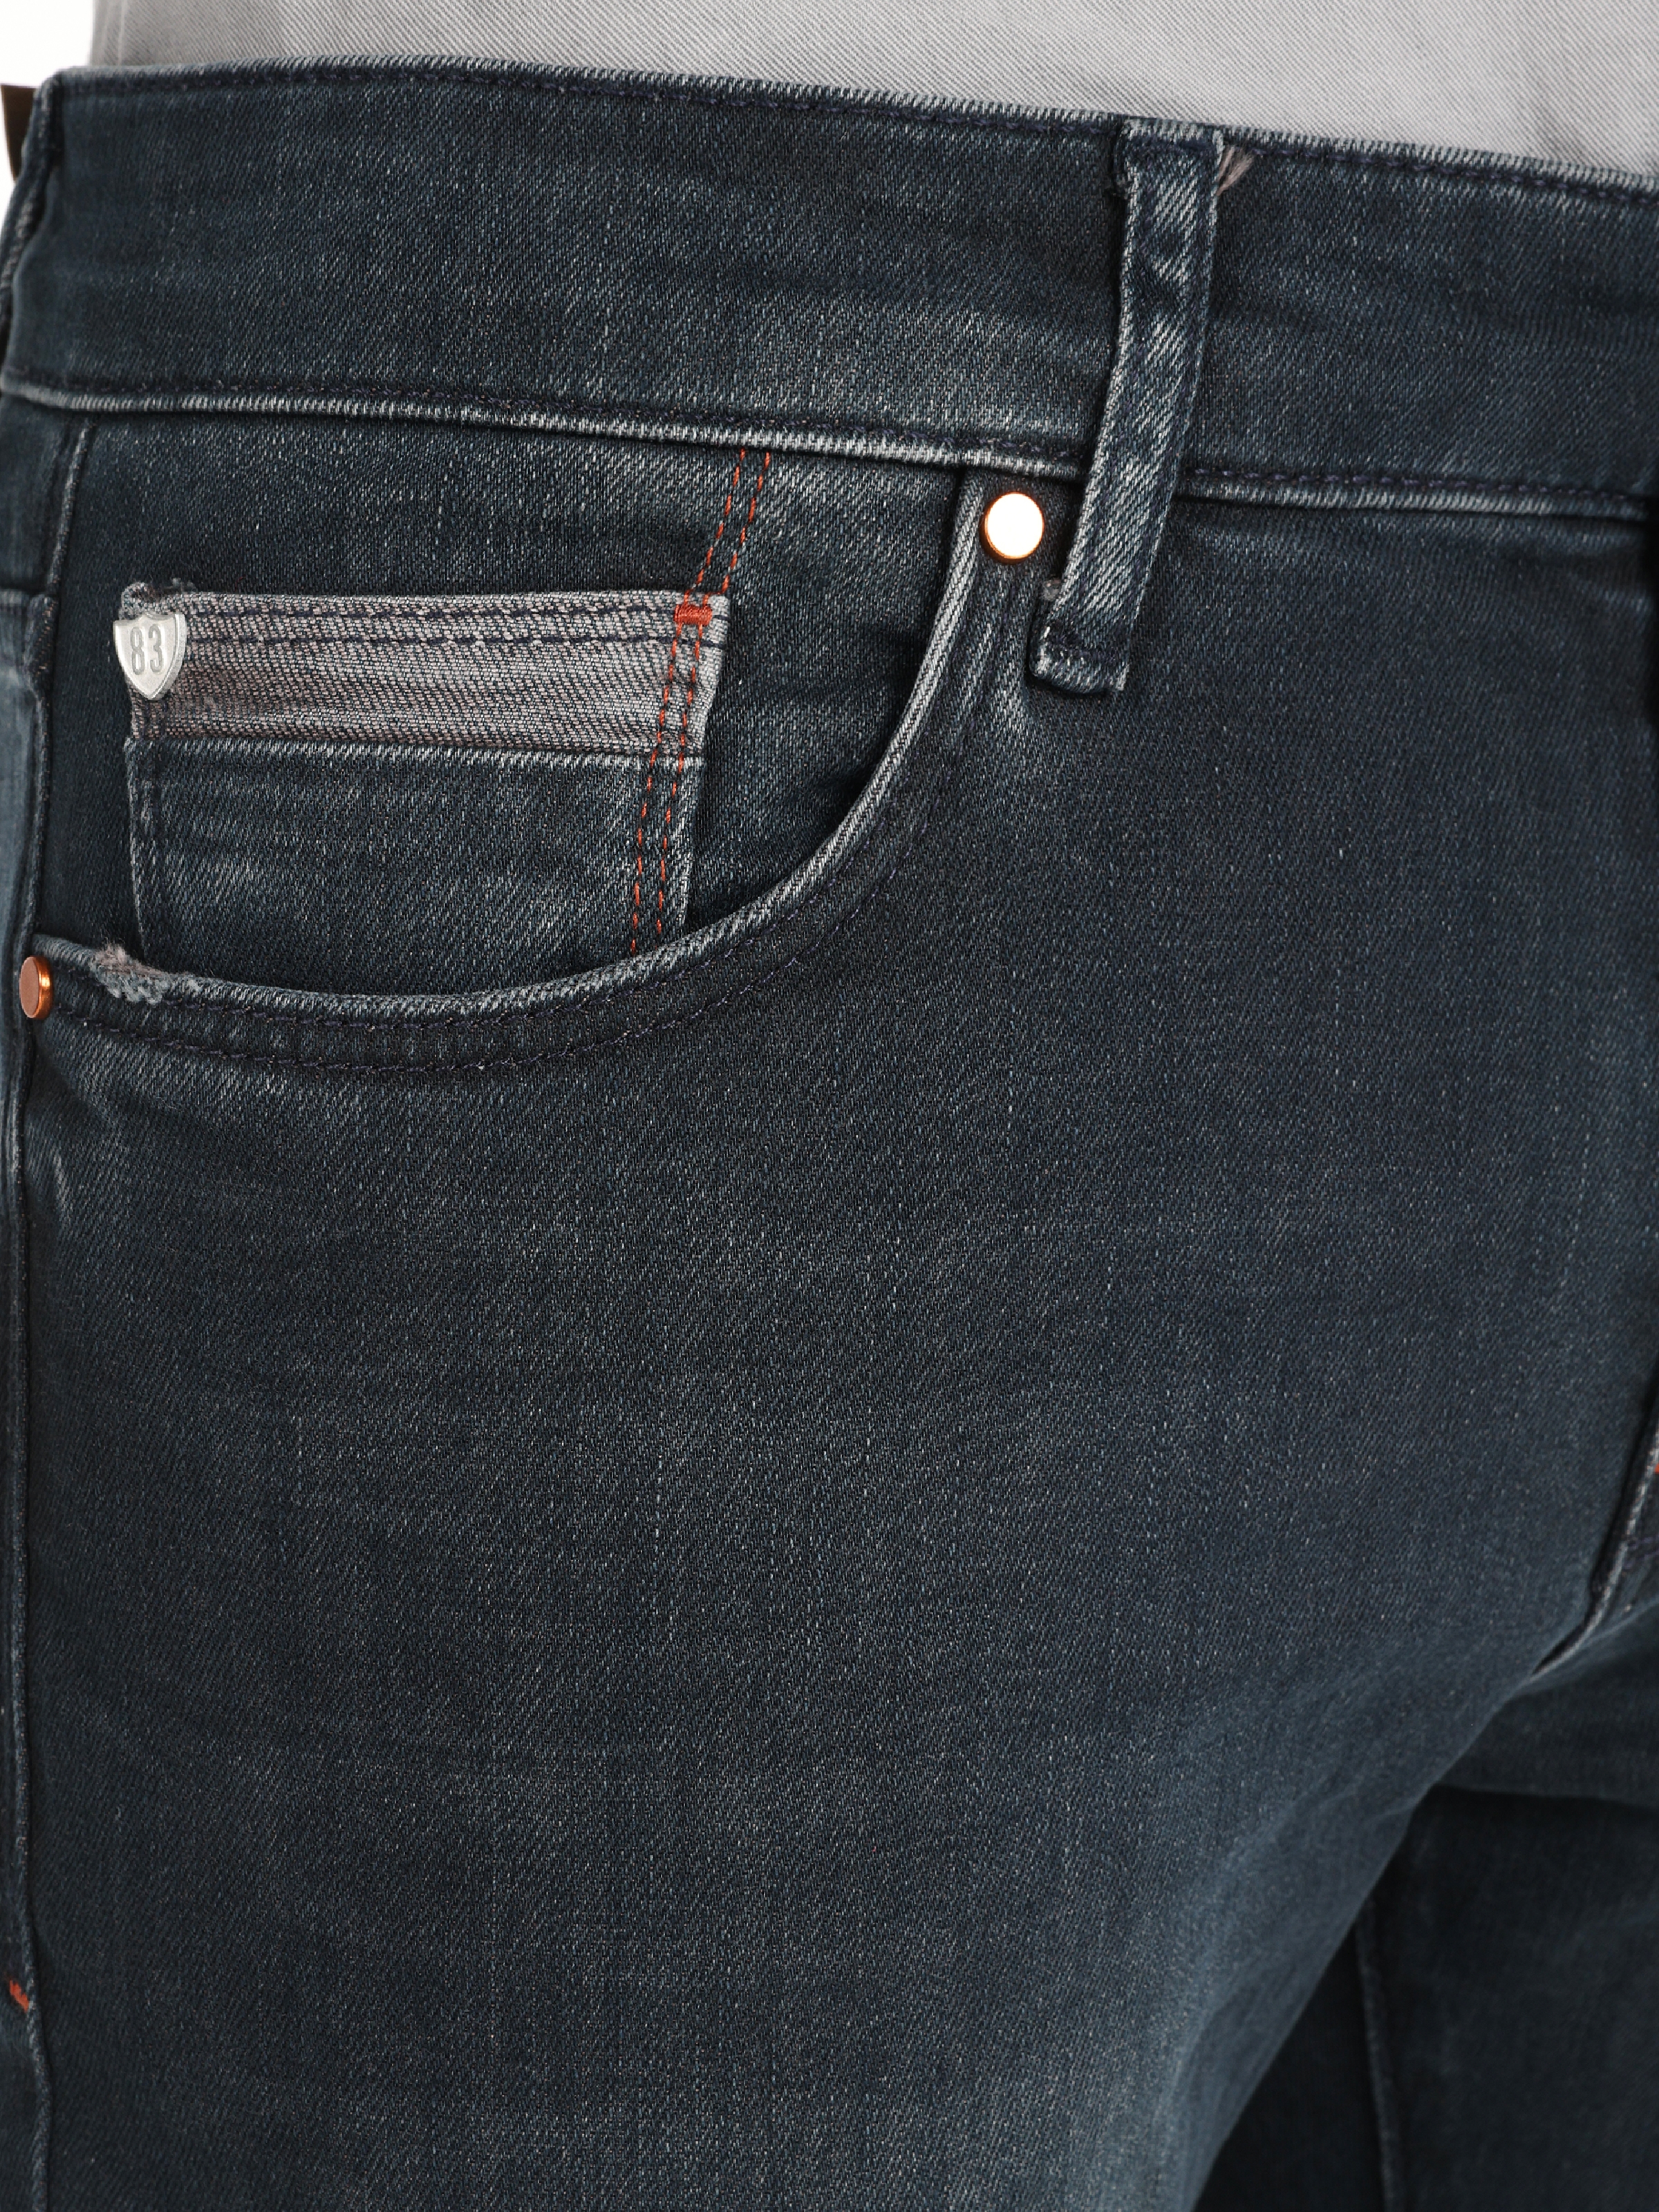 Afișați detalii pentru Pantaloni De Barbati Albastru inchis Slim Fit 041 DANNY CL1066309